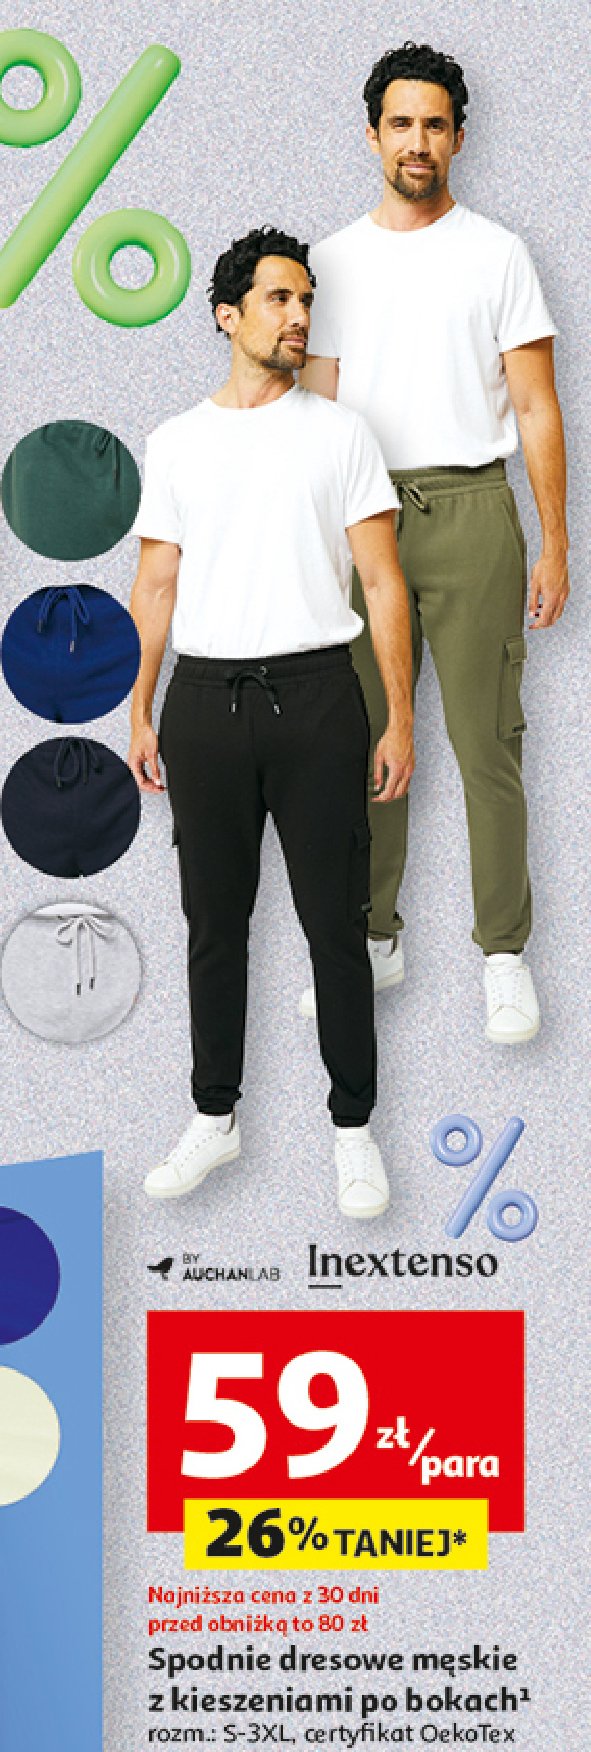 Spodnie dresowe s-3xl Auchan inextenso promocja